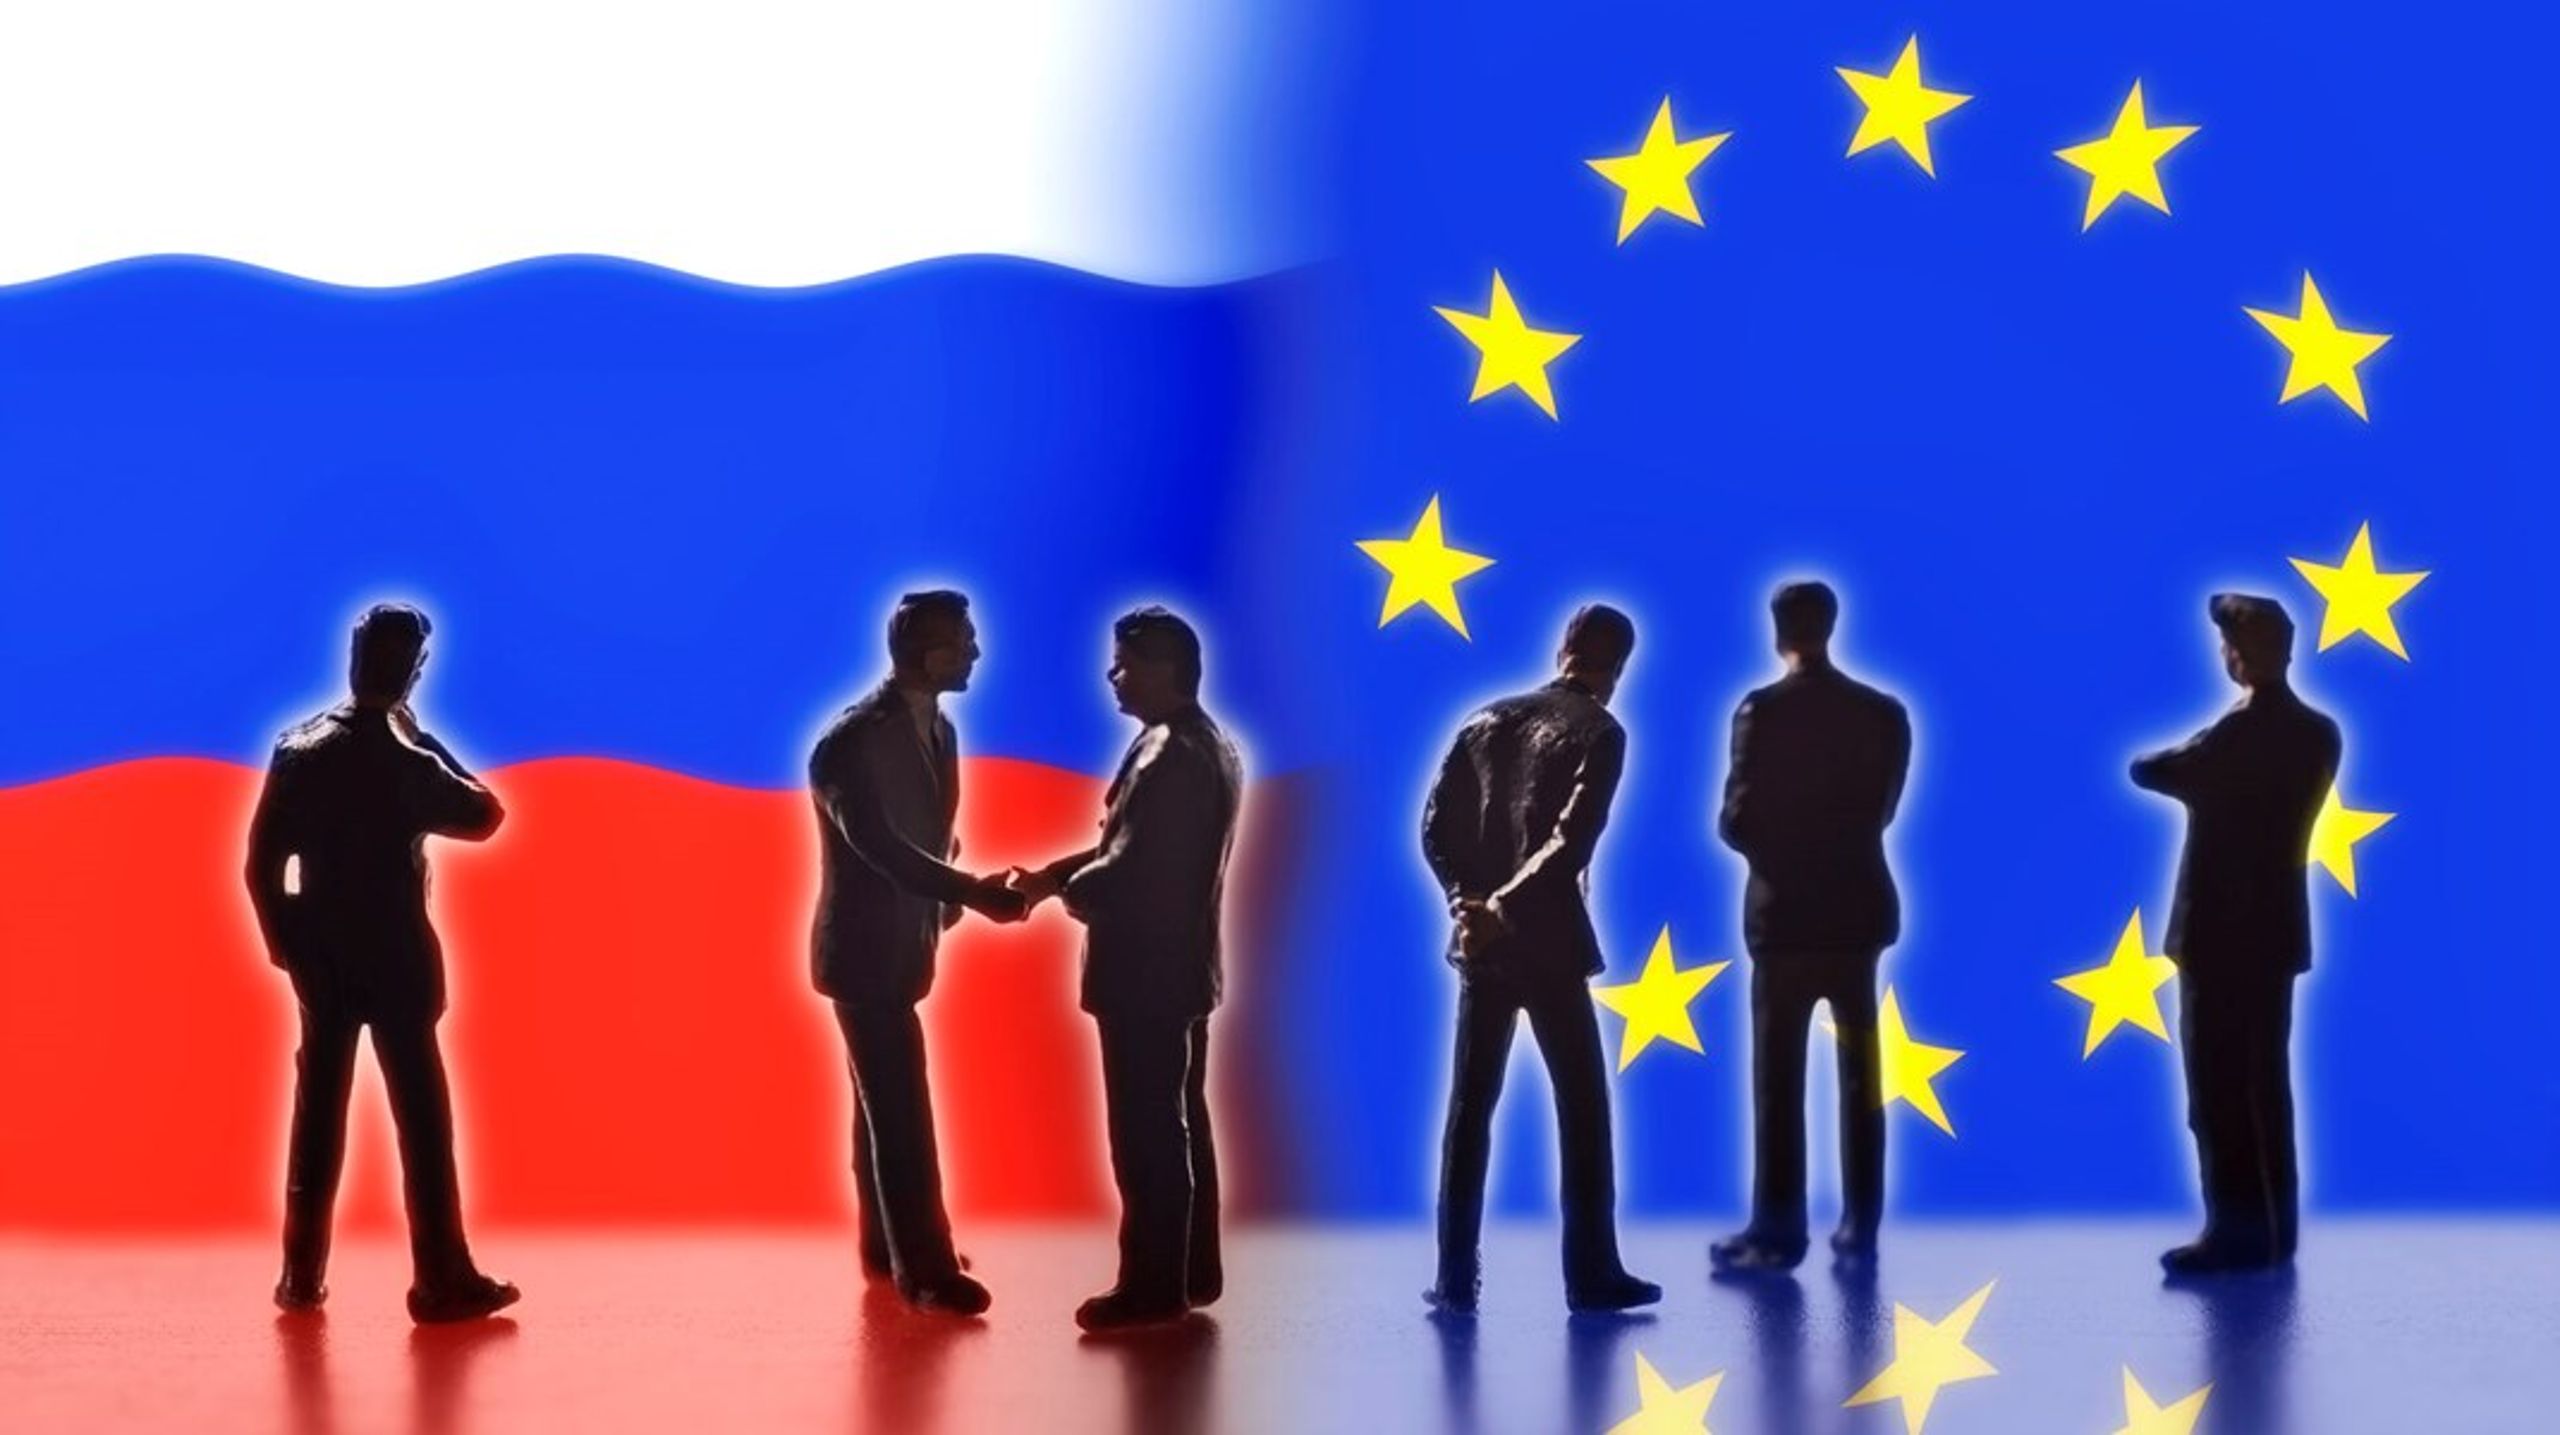 Efterforskninger i Belgien, Tjekkiet og muligvis også andre EU-lande peger på, at nogle medlemmer af Europa-Parlamentet angiveligt har modtaget penge for at fremme Ruslands interesser.